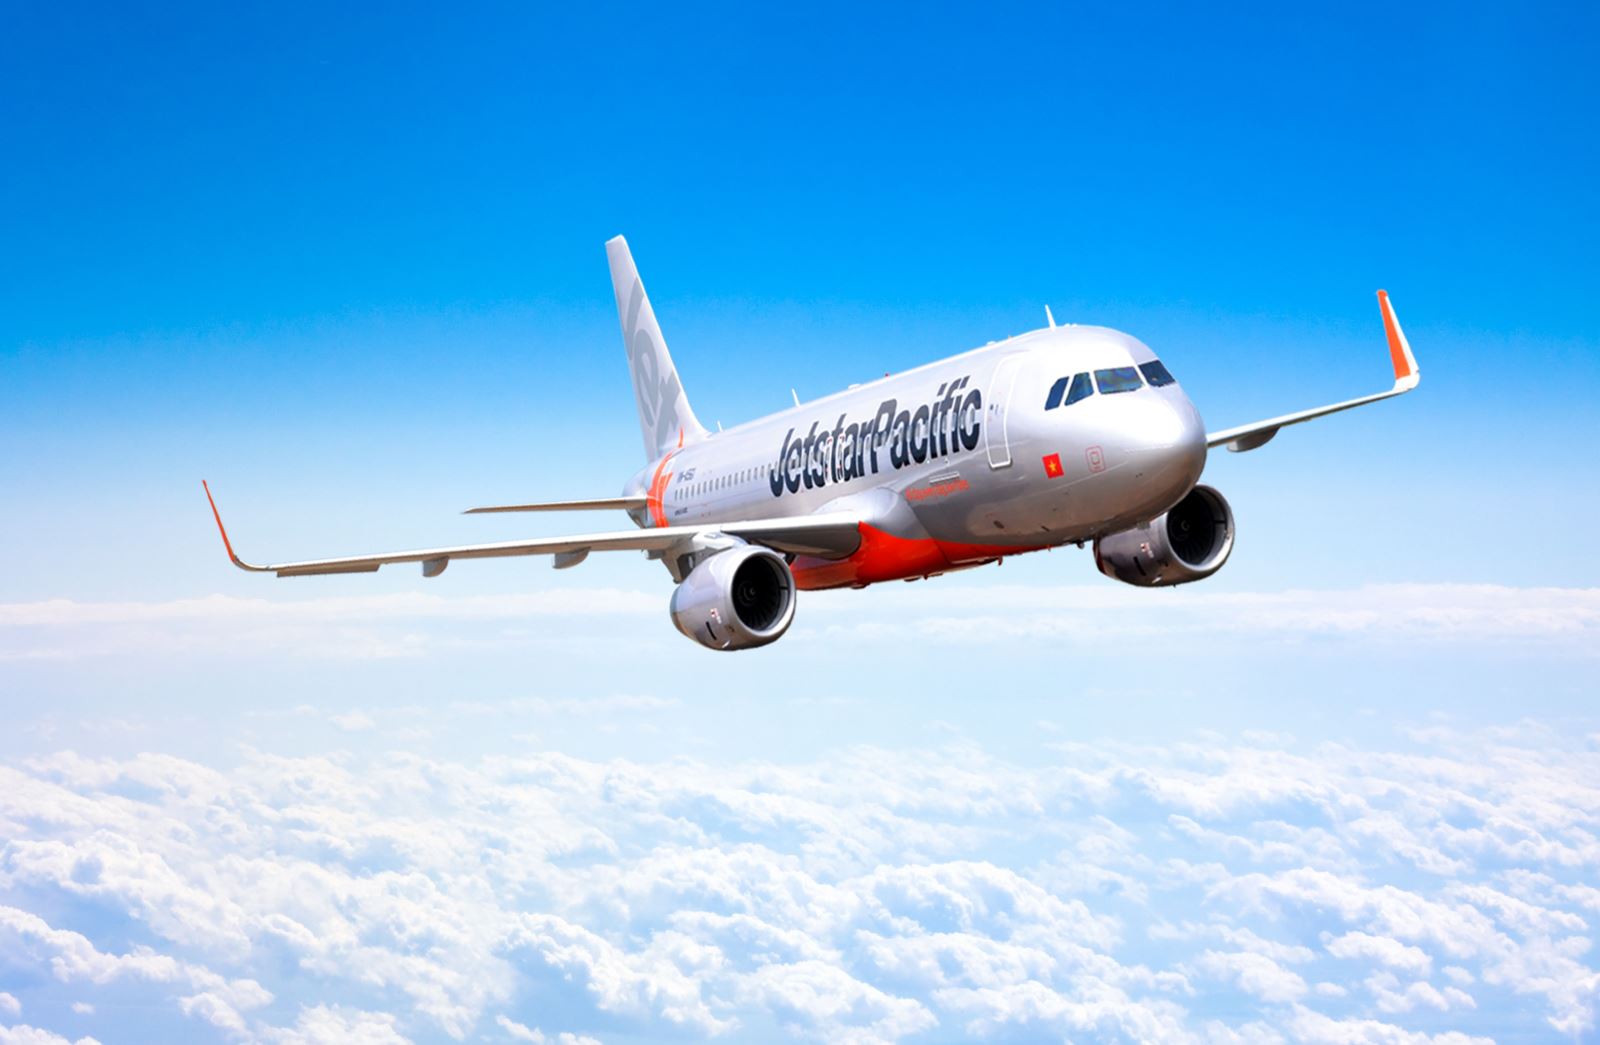 Vé máy bay Pacific Airlines giá rẻ khuyến mãi với đại lý đặt vé trực tuyến  Vivavivucom